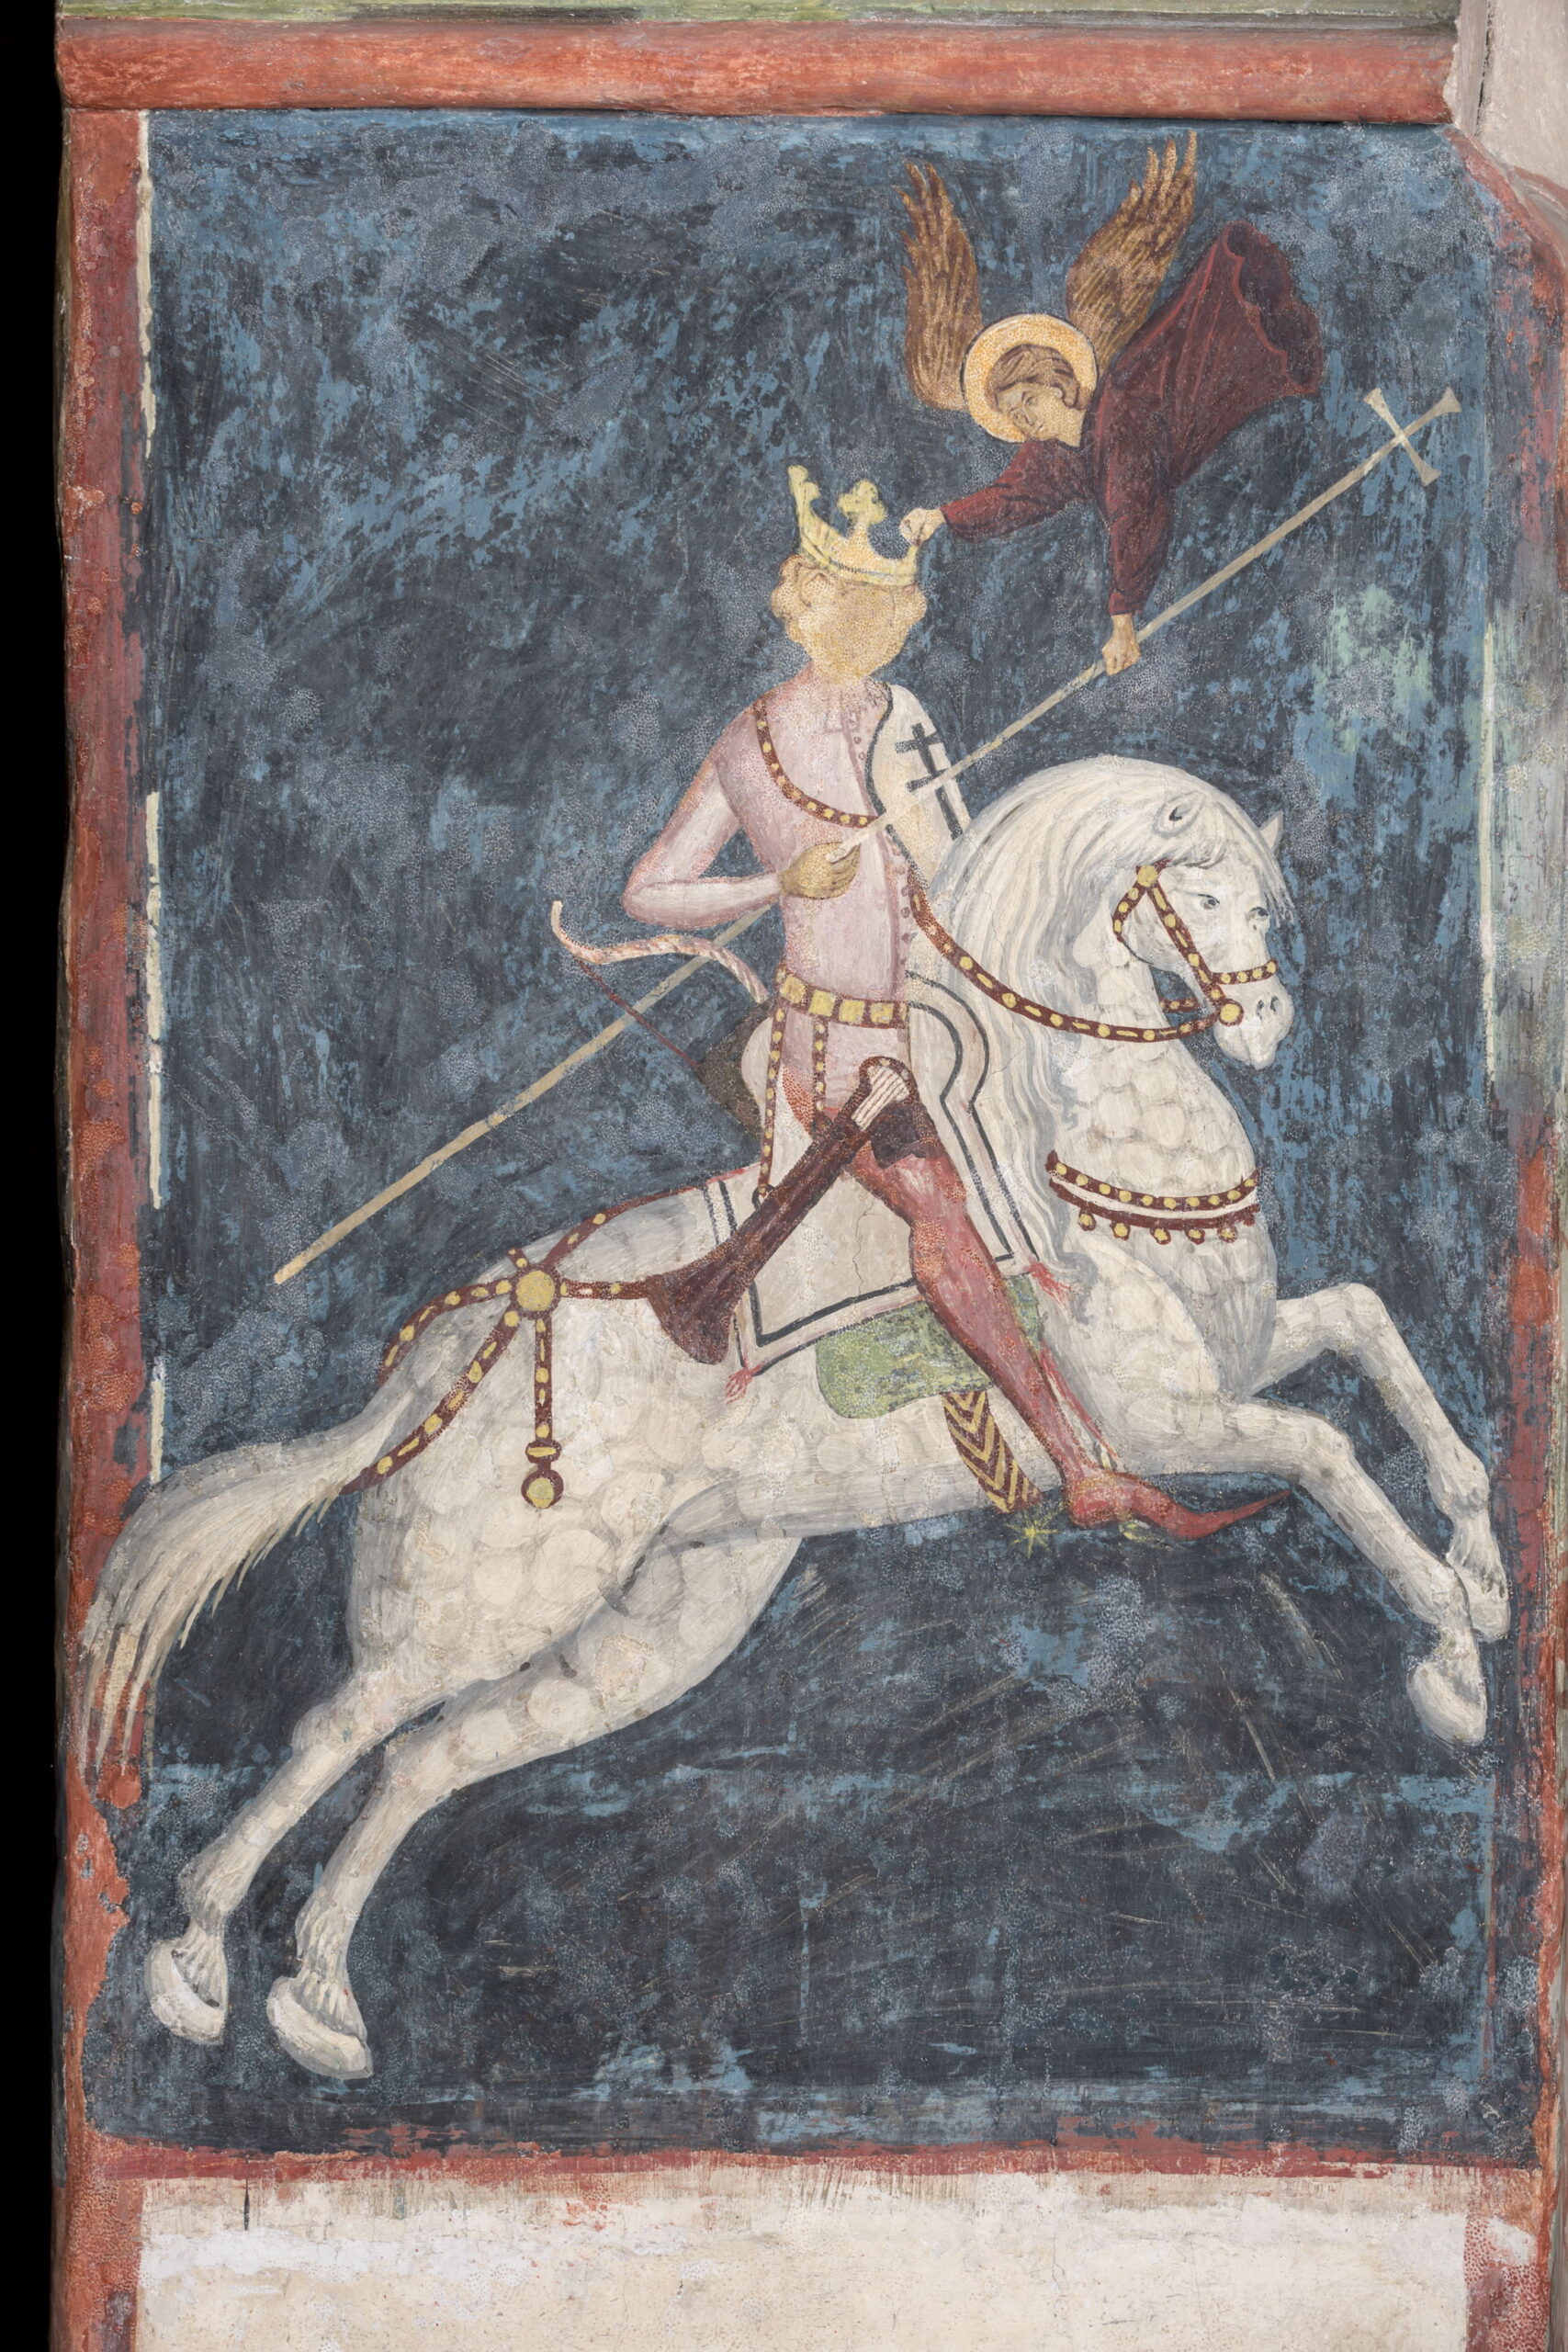 Fresk przedstawiający postać w koronie na białym koniu. Nad postacią anioł. Tło niebieskie.